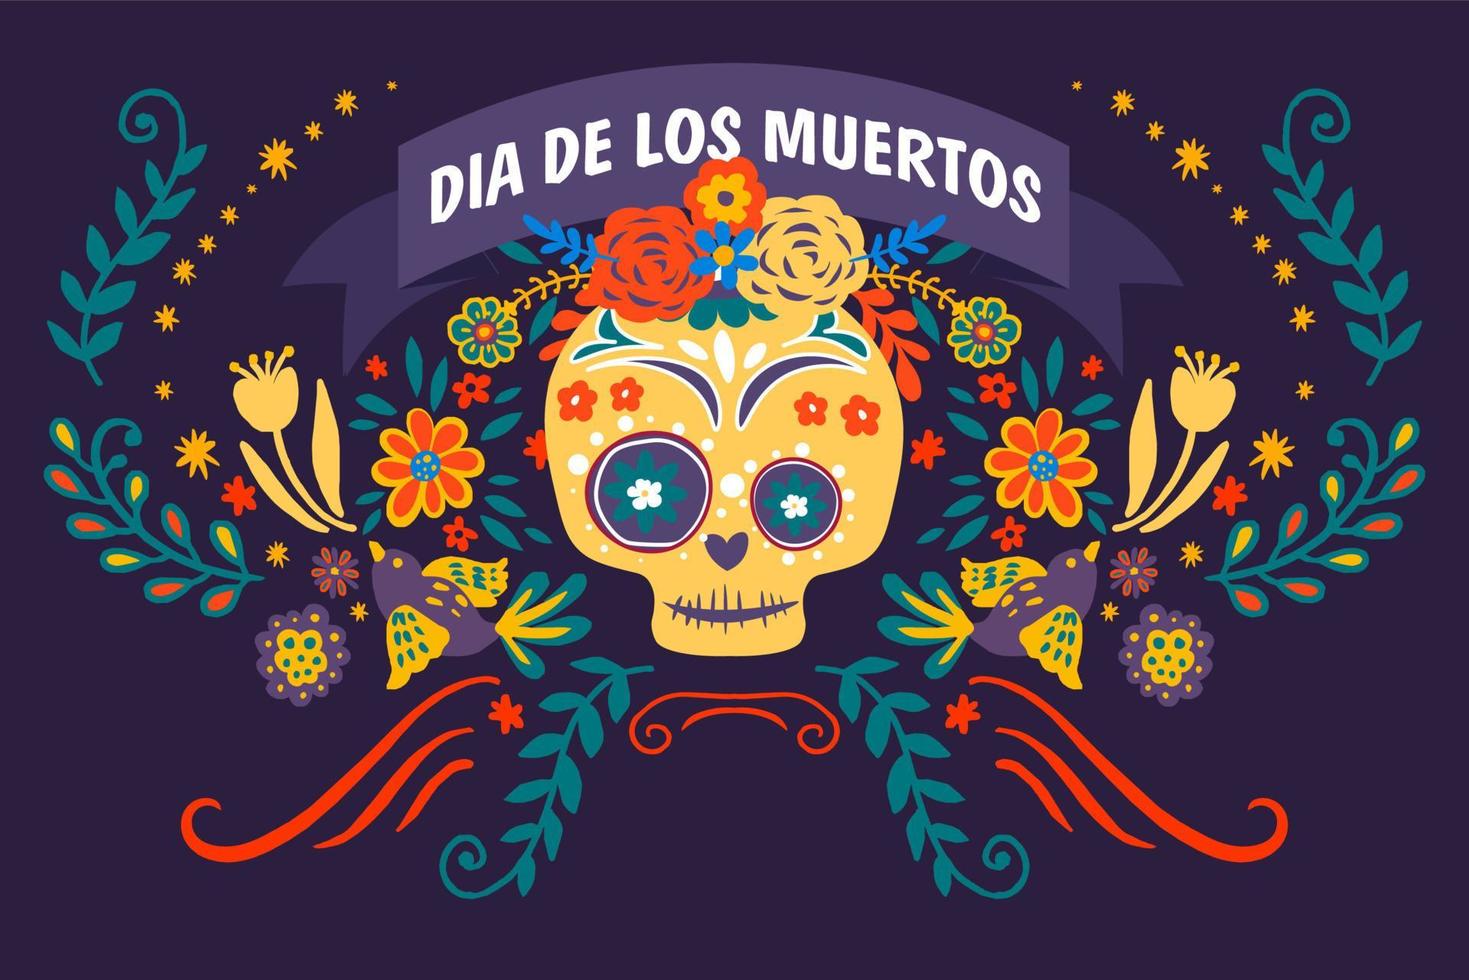 Dia de los muertos, skull decorated with flowers vector